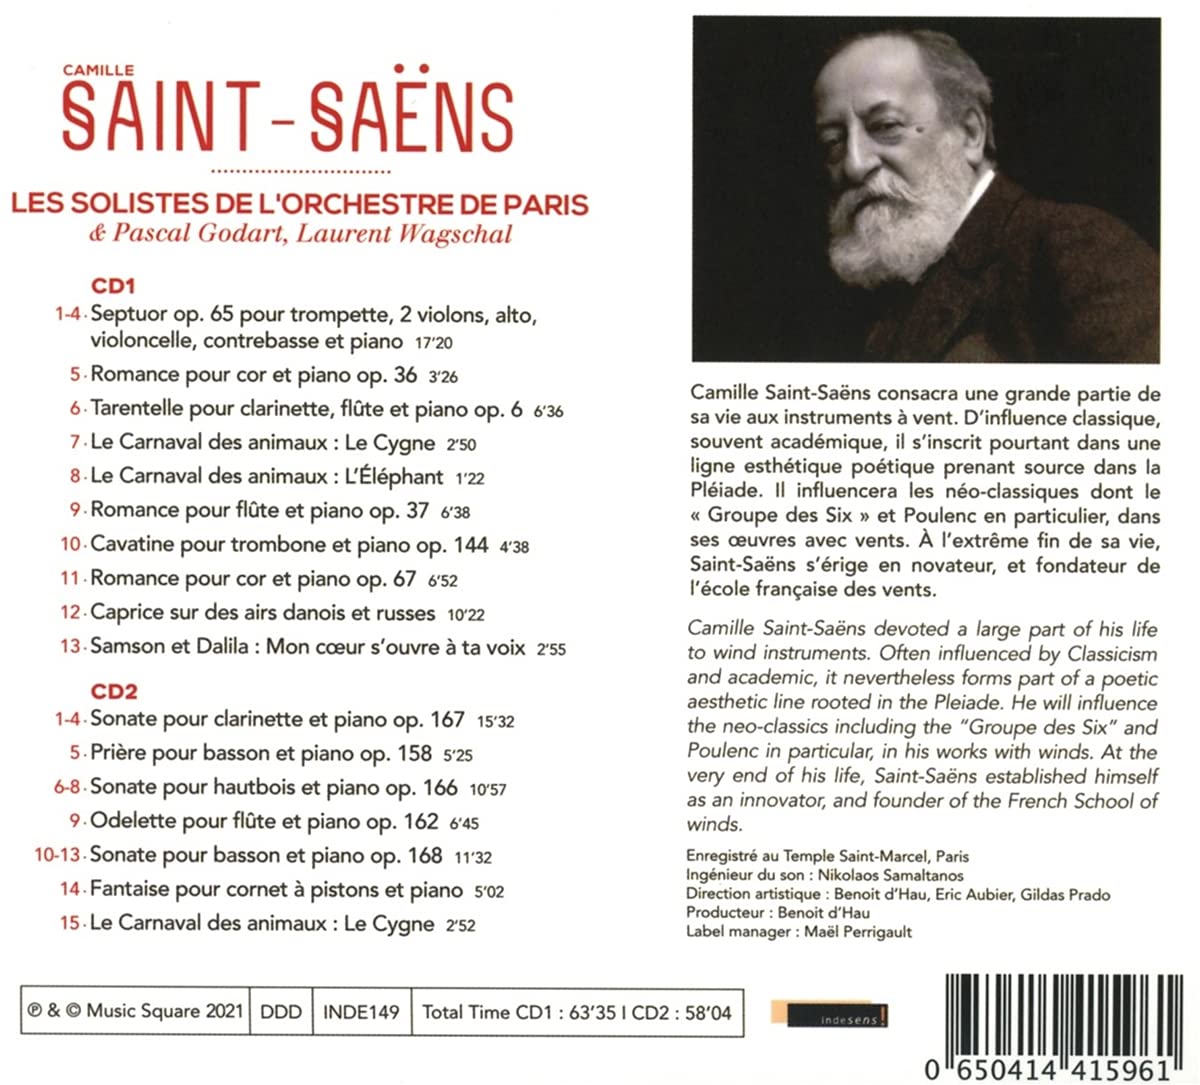 Les Soloists de l'Orchestre de Paris 생상스: 목관을 위한 실내악 (Saint-Saens: Chamber Music With Winds)